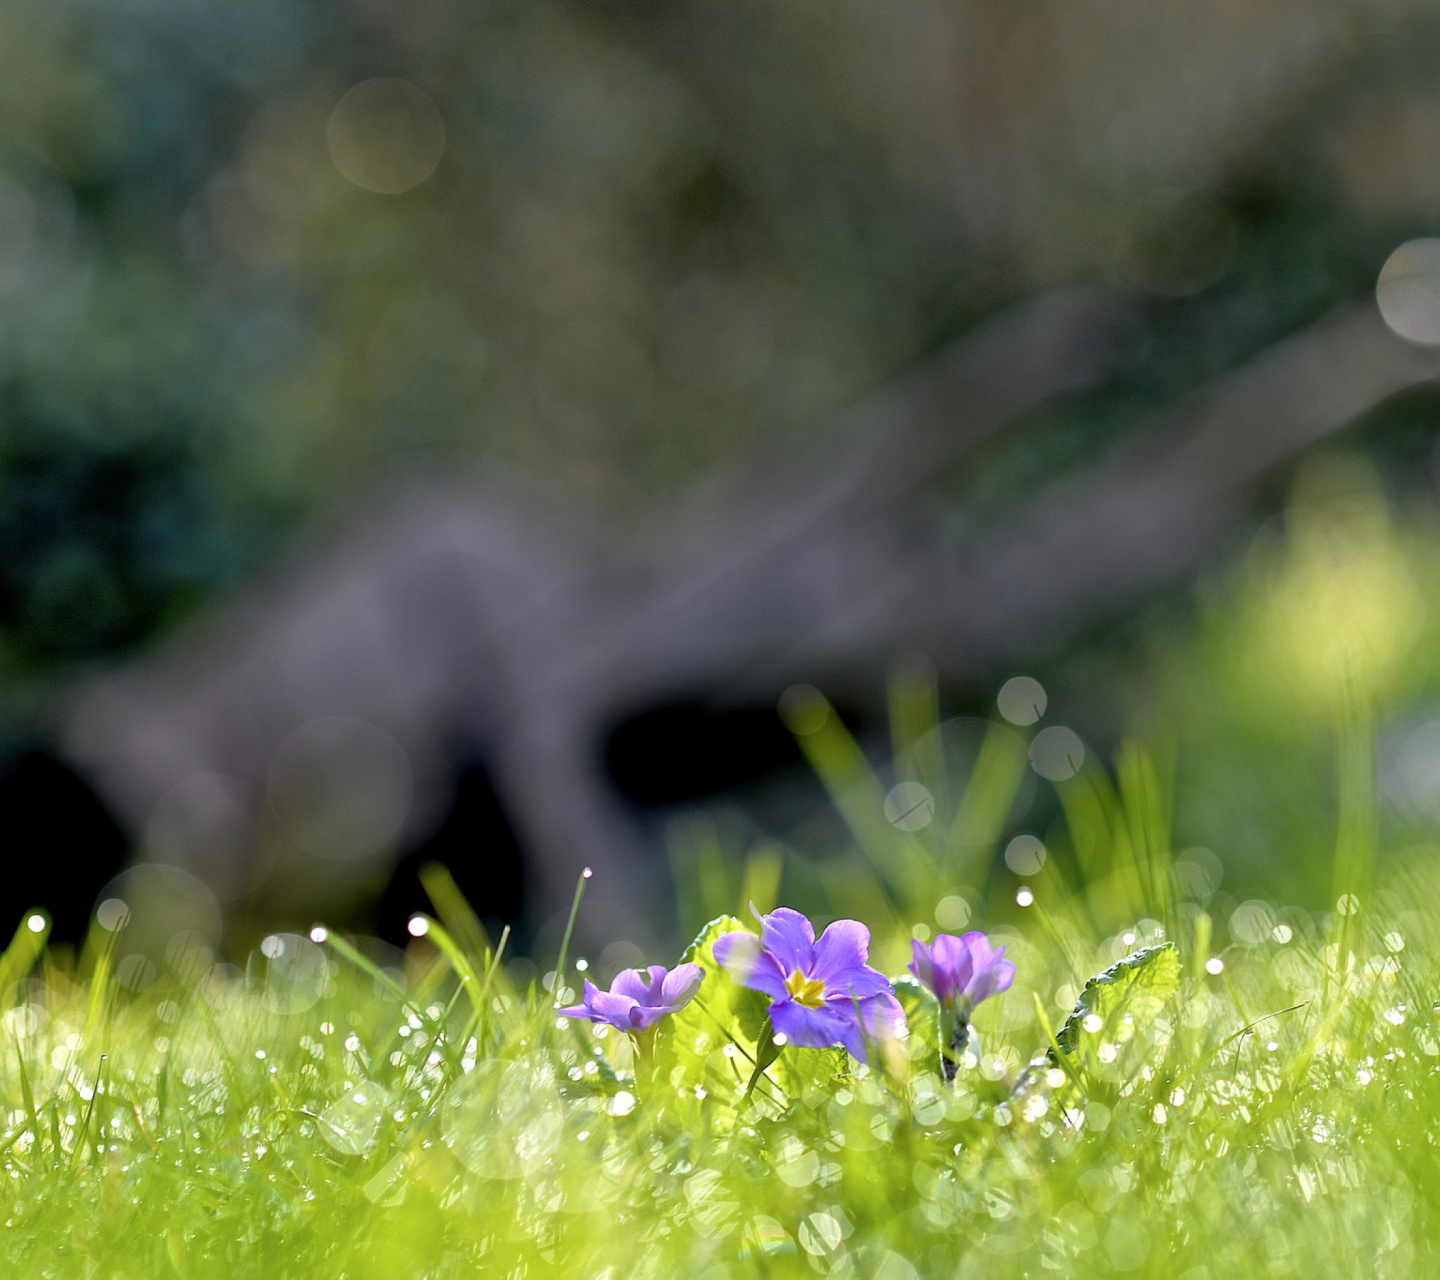 Grass and lilac flower screenshot #1 1440x1280